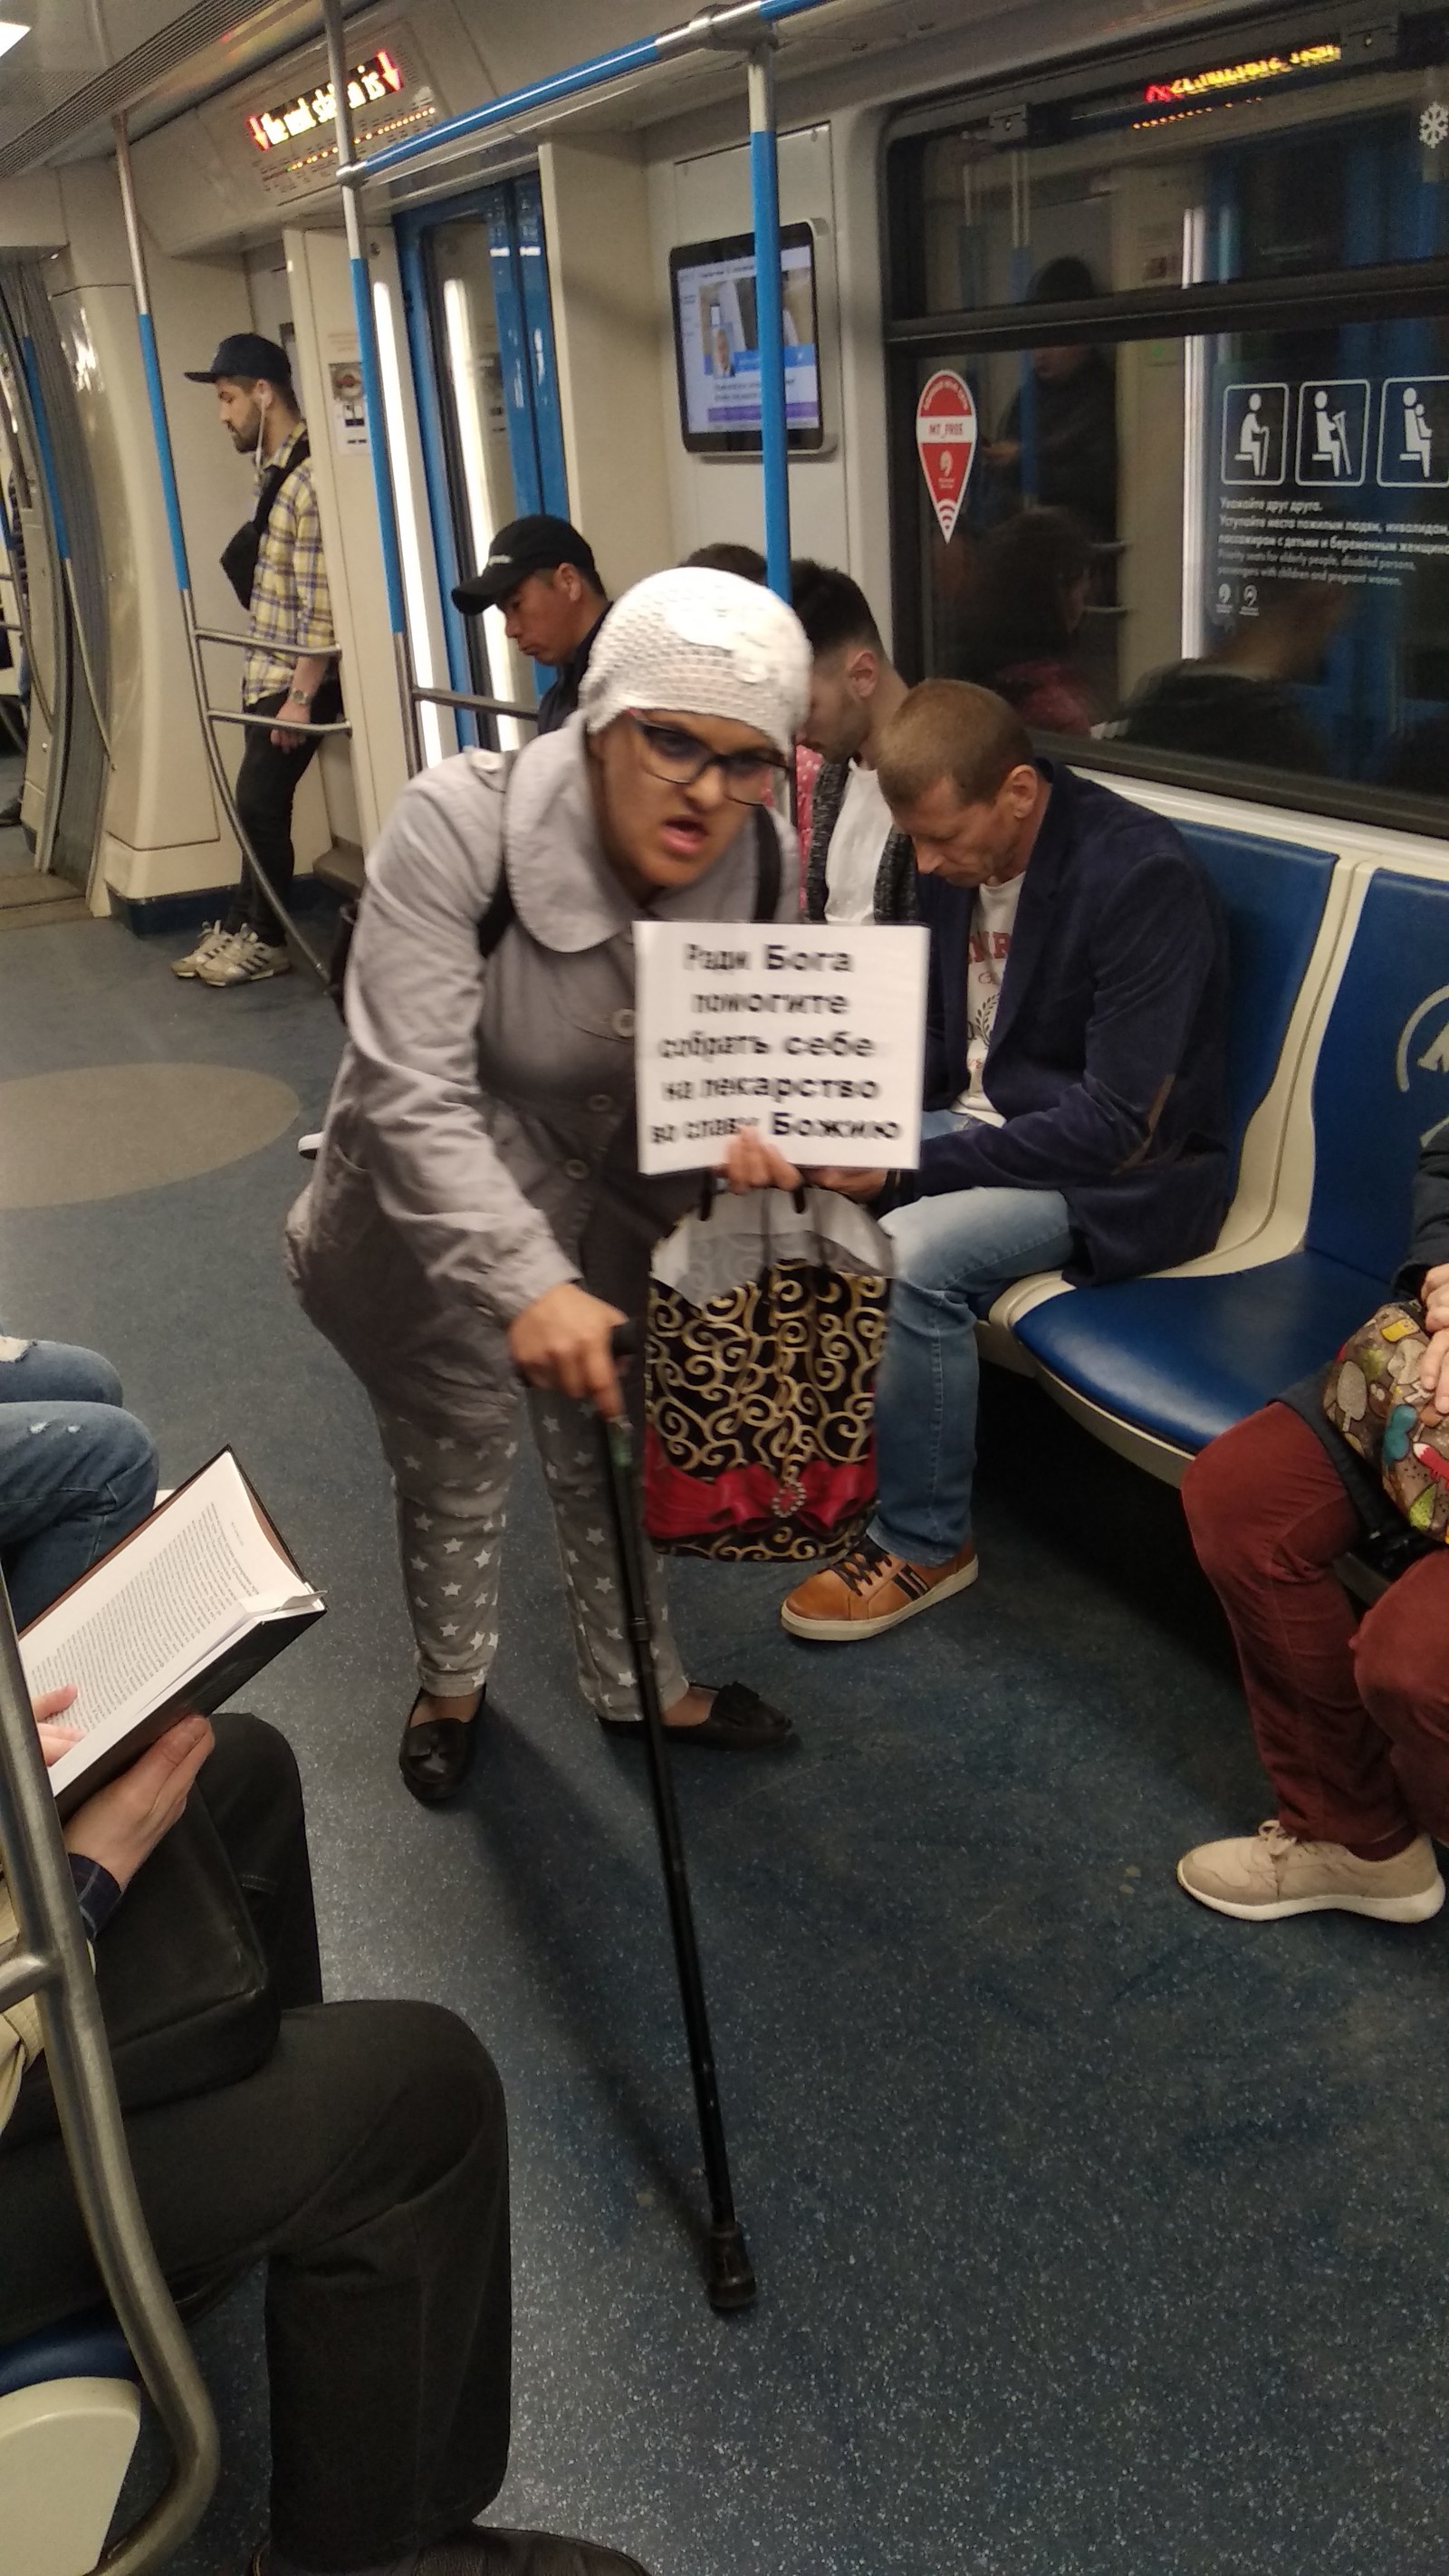 Попрошайки в метро москвы фото